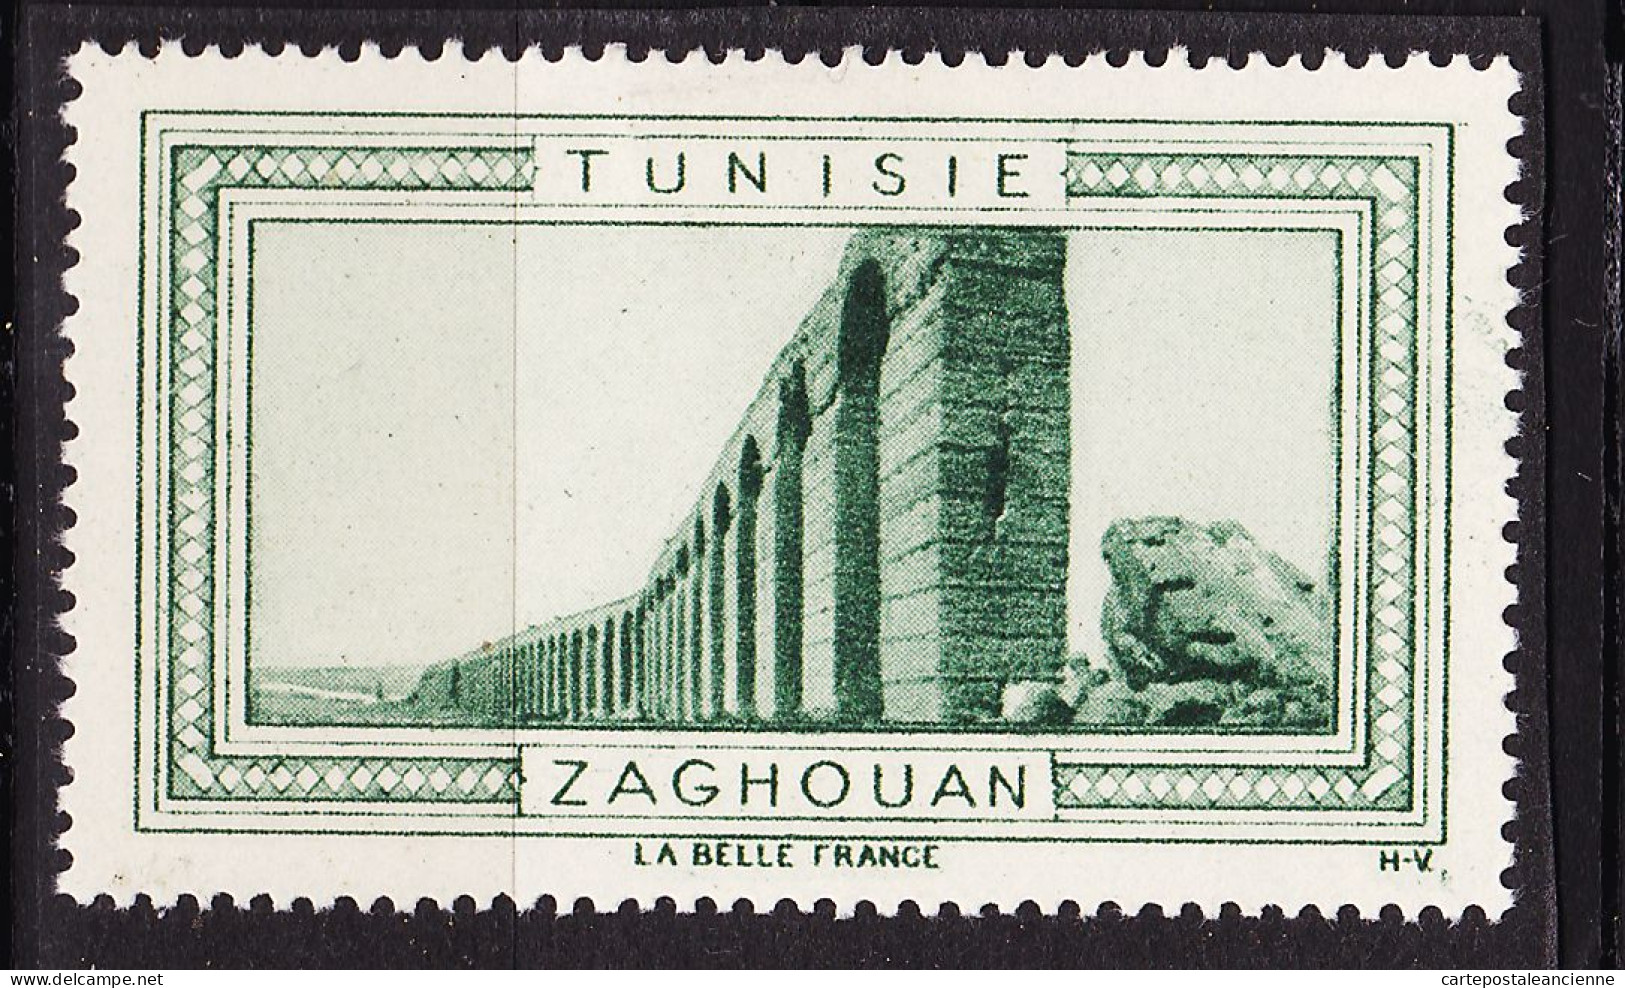 13011 ● ZAGHOUAN TUNISIE Vignette De Collection LA BELLE FRANCE 1925s H-V Helio VAUGIRARD PARIS Erinnophilie - Tourism (Labels)